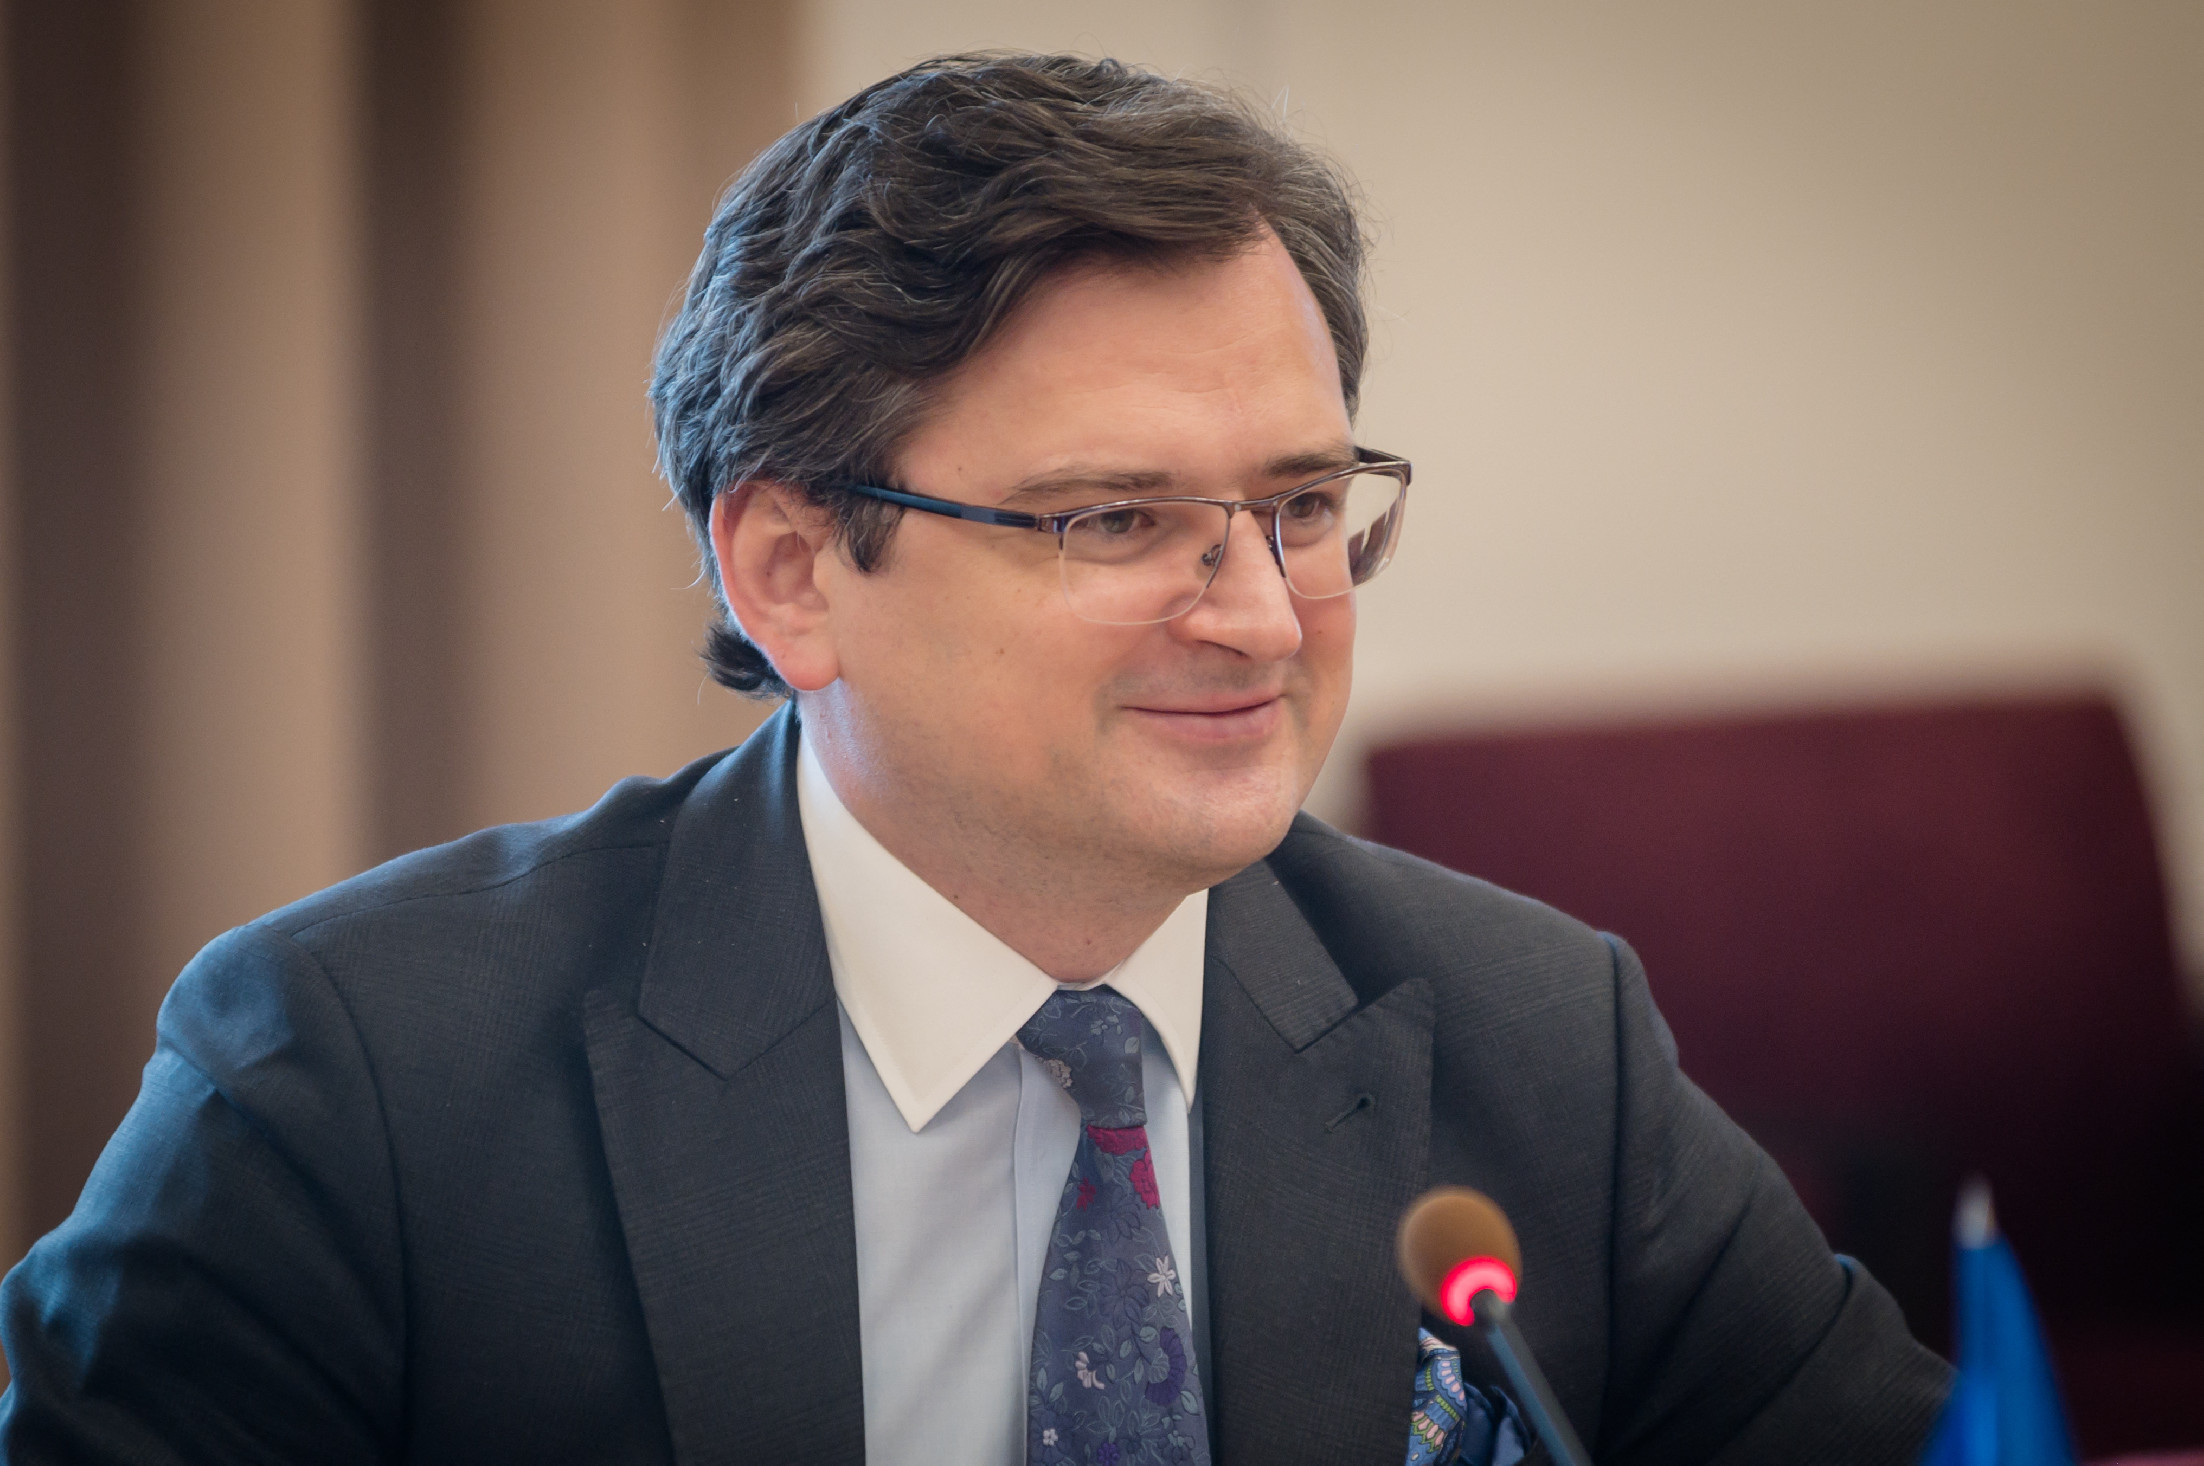 Kövér László átlépte a vörös vonalat – mondta az ukrán külügyminiszter